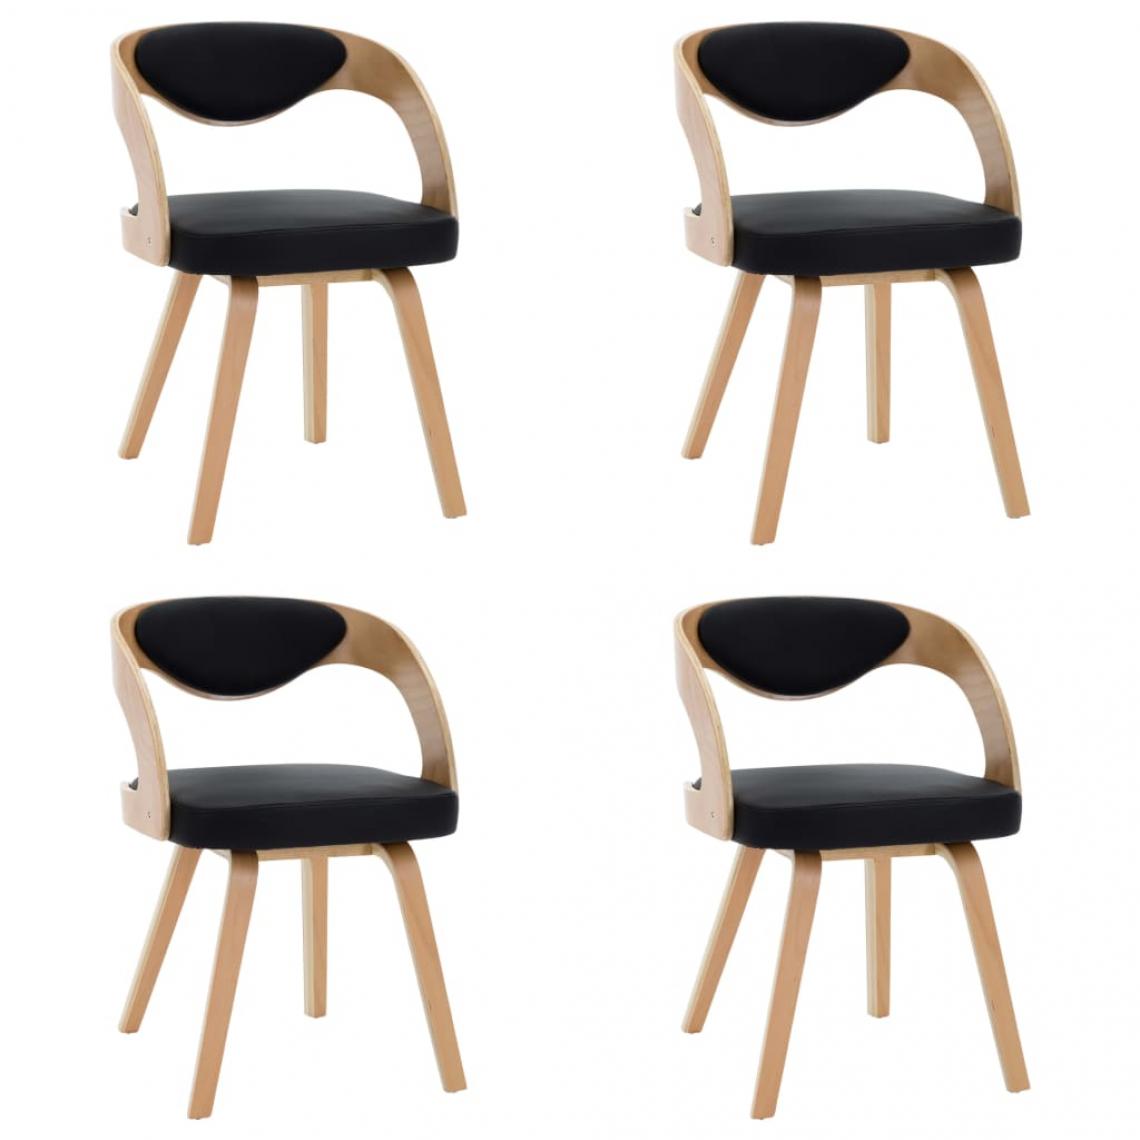 Decoshop26 - Lot de 4 chaises de salle à manger cuisine design élégant bois courbé et similicuir noir CDS021777 - Chaises